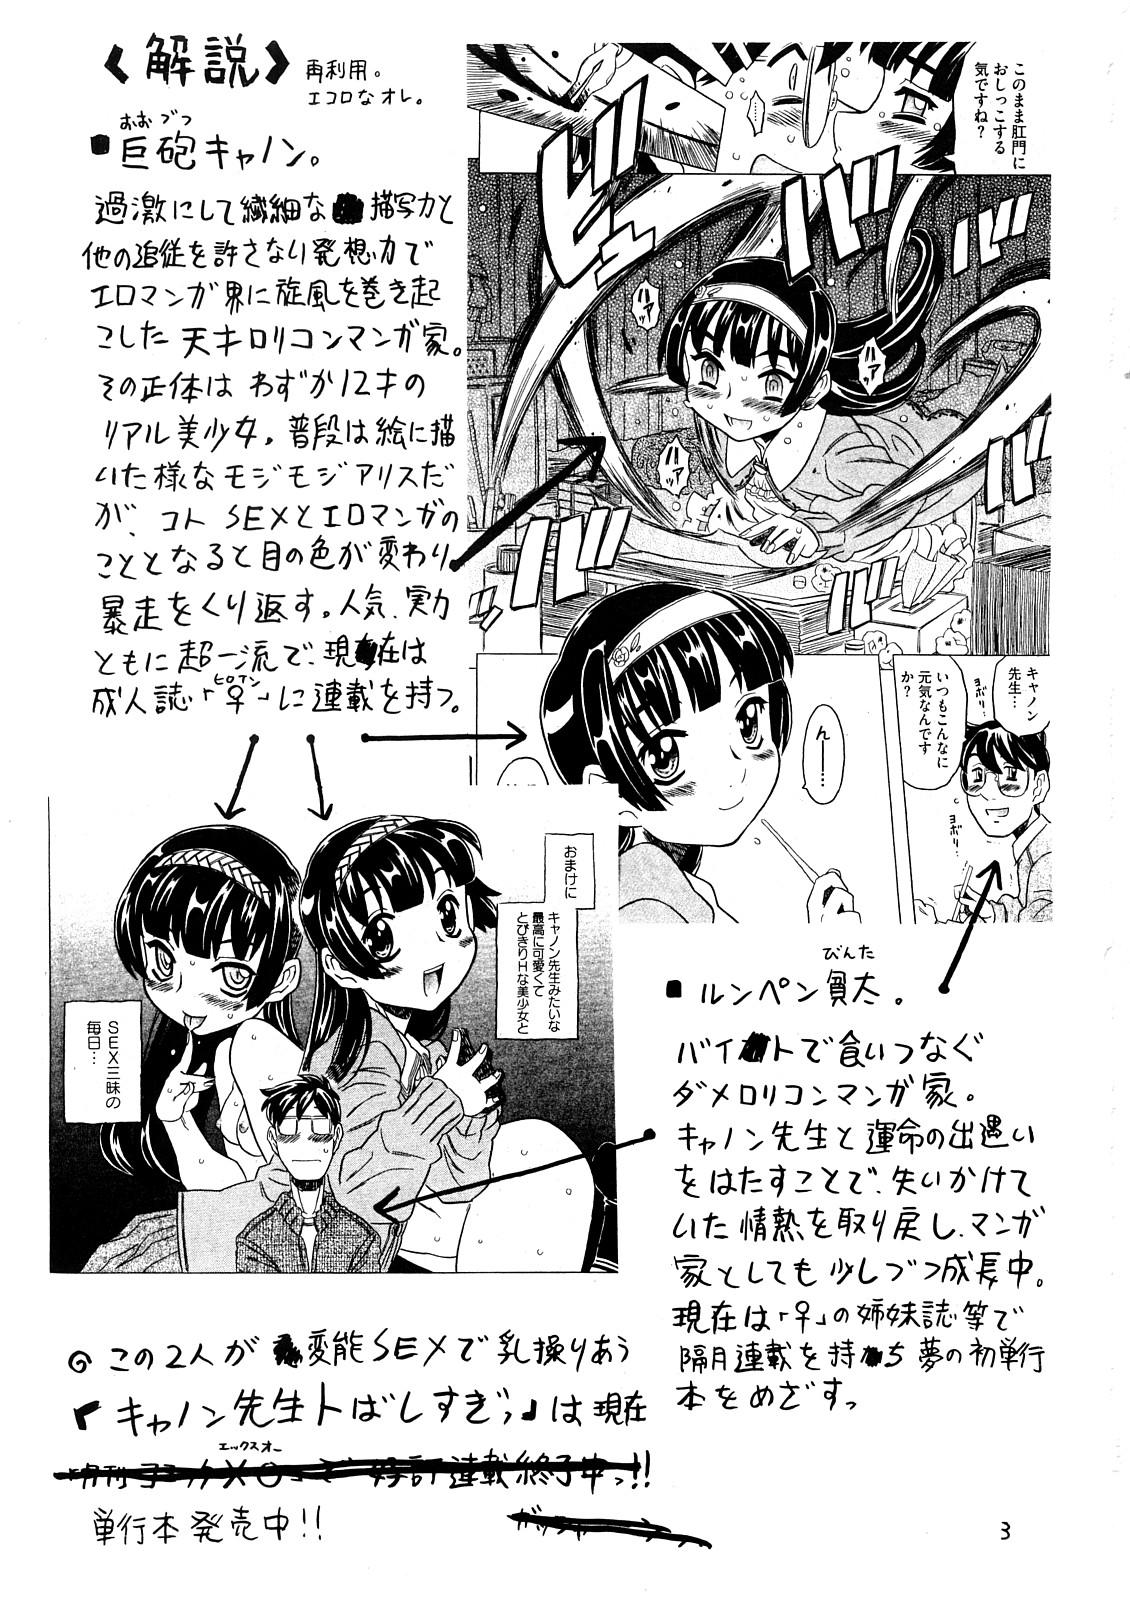 Esposa Yoroshikuo Negai... Party - Page 2